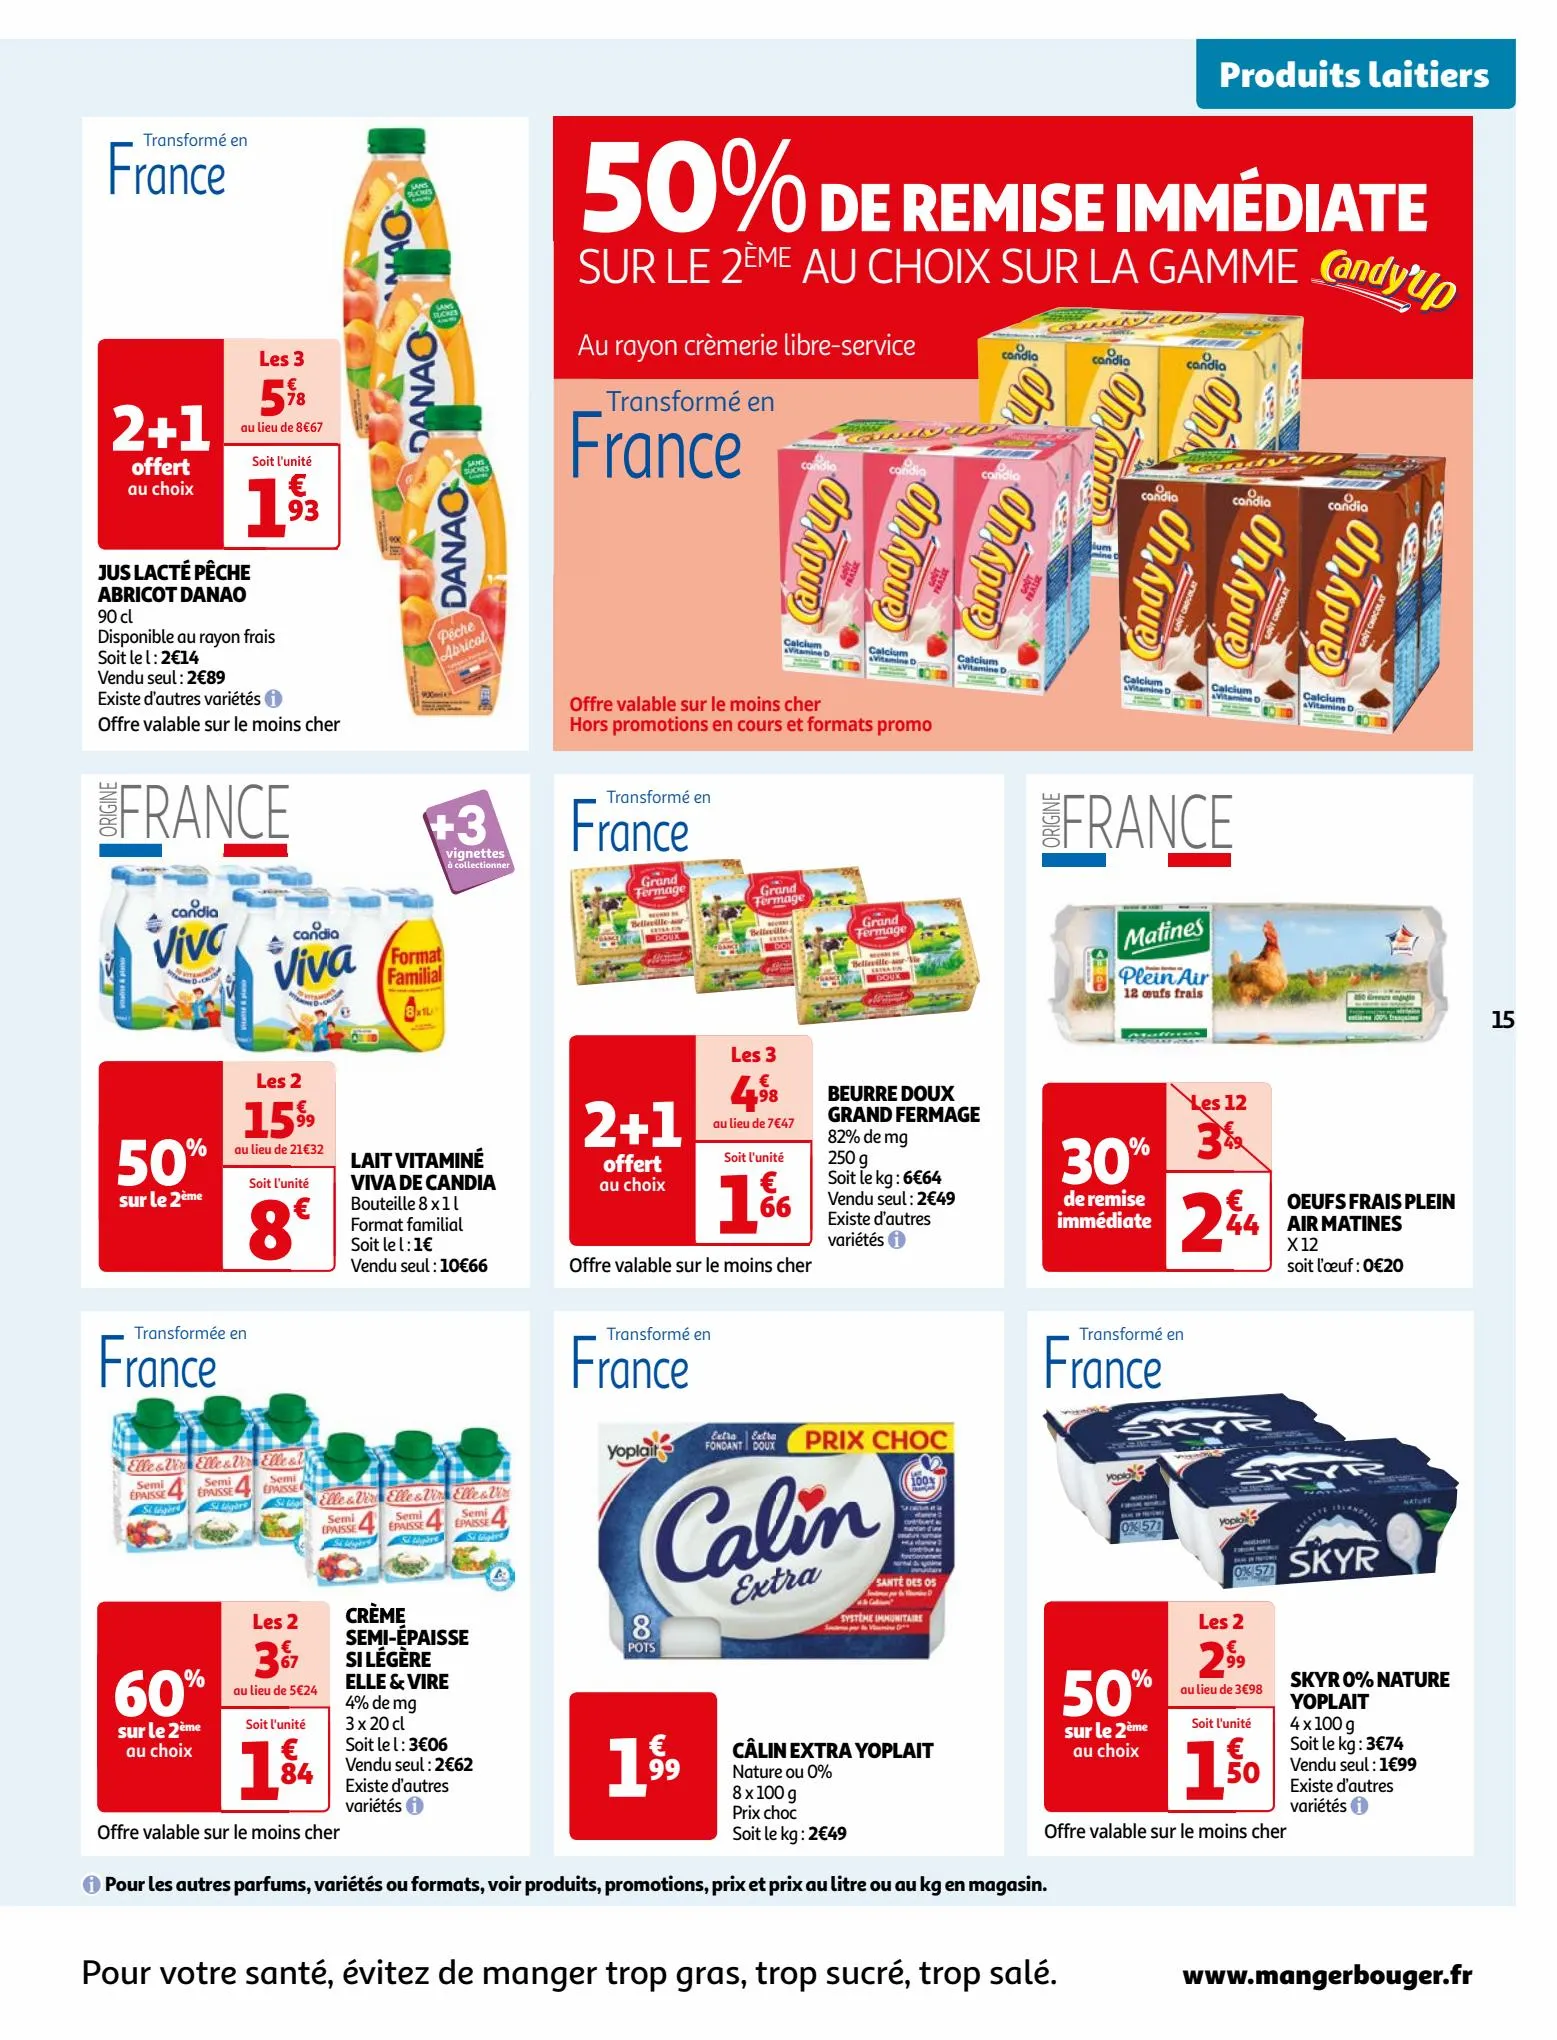 Catalogue Vos produits laitiers à petits prix !, page 00015